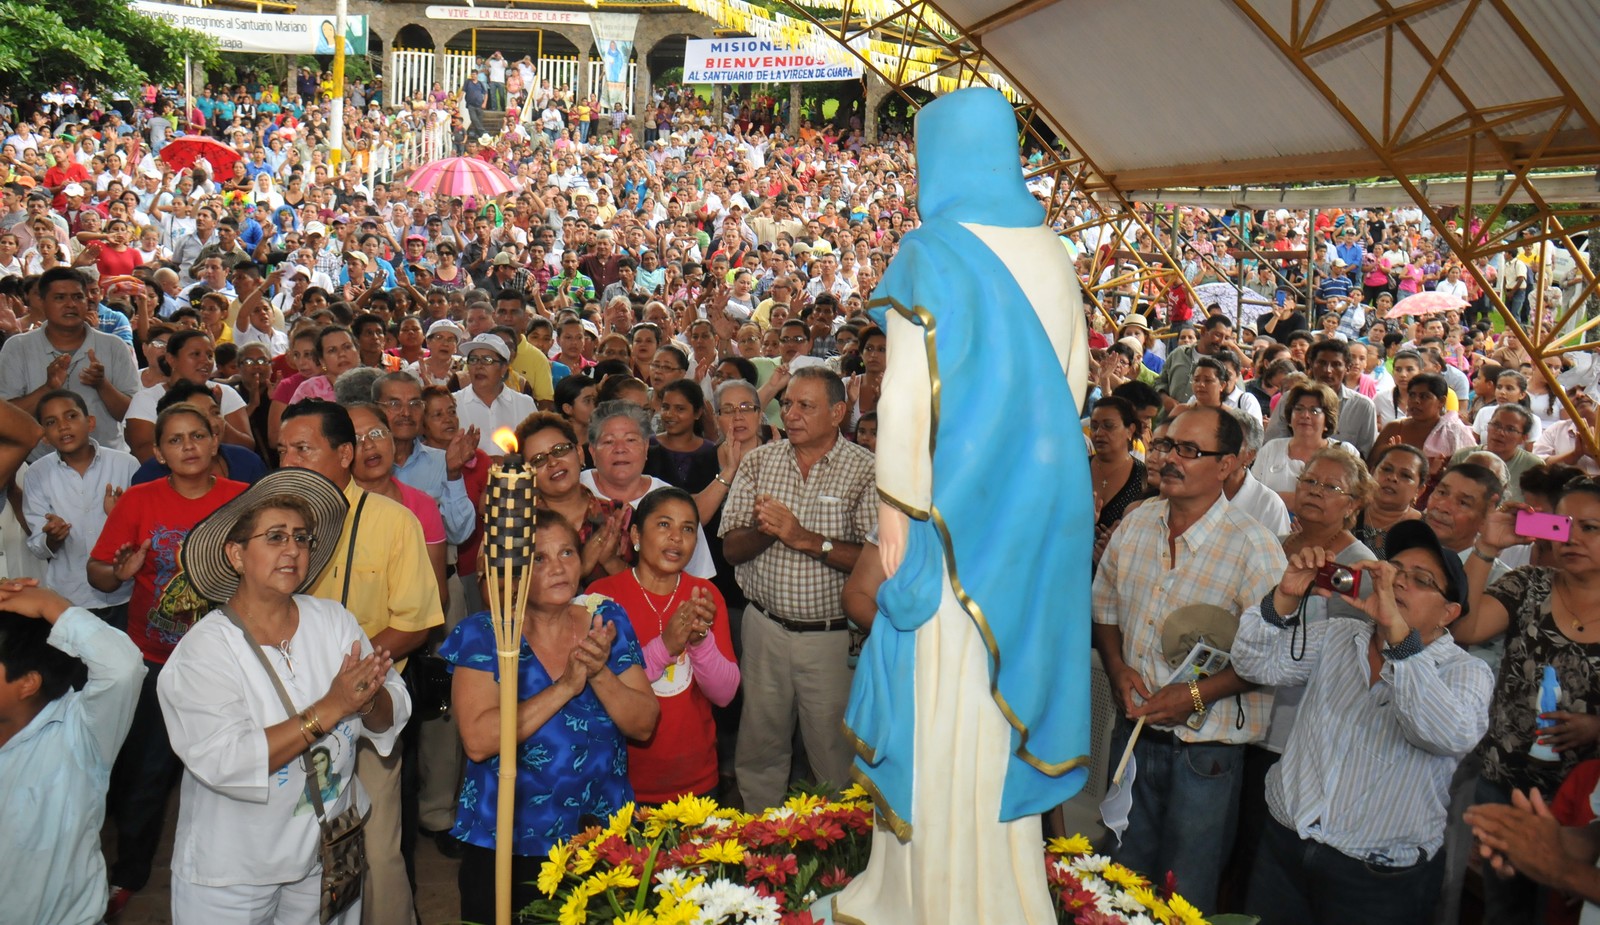 Virgen de Cuapa, Aparición Aprobada por la Iglesia, Nicaragua (15 abr, 8 may)